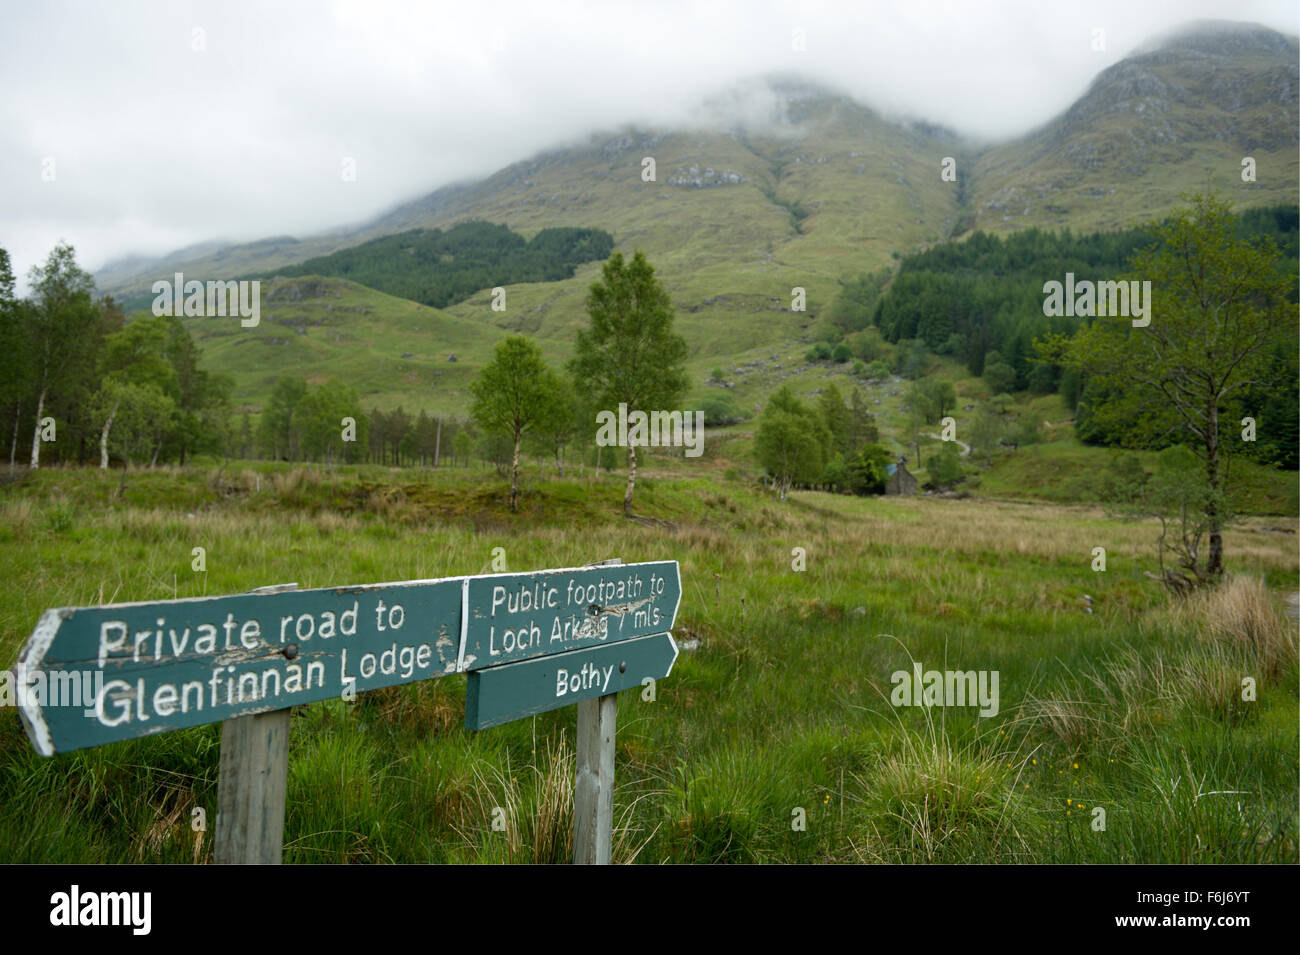 Los letreros en la cabeza de Glen Finnan indicando el camino a través de una carretera privada de Glenfinnan Lodge y el sendero al Loch Arkaig Foto de stock